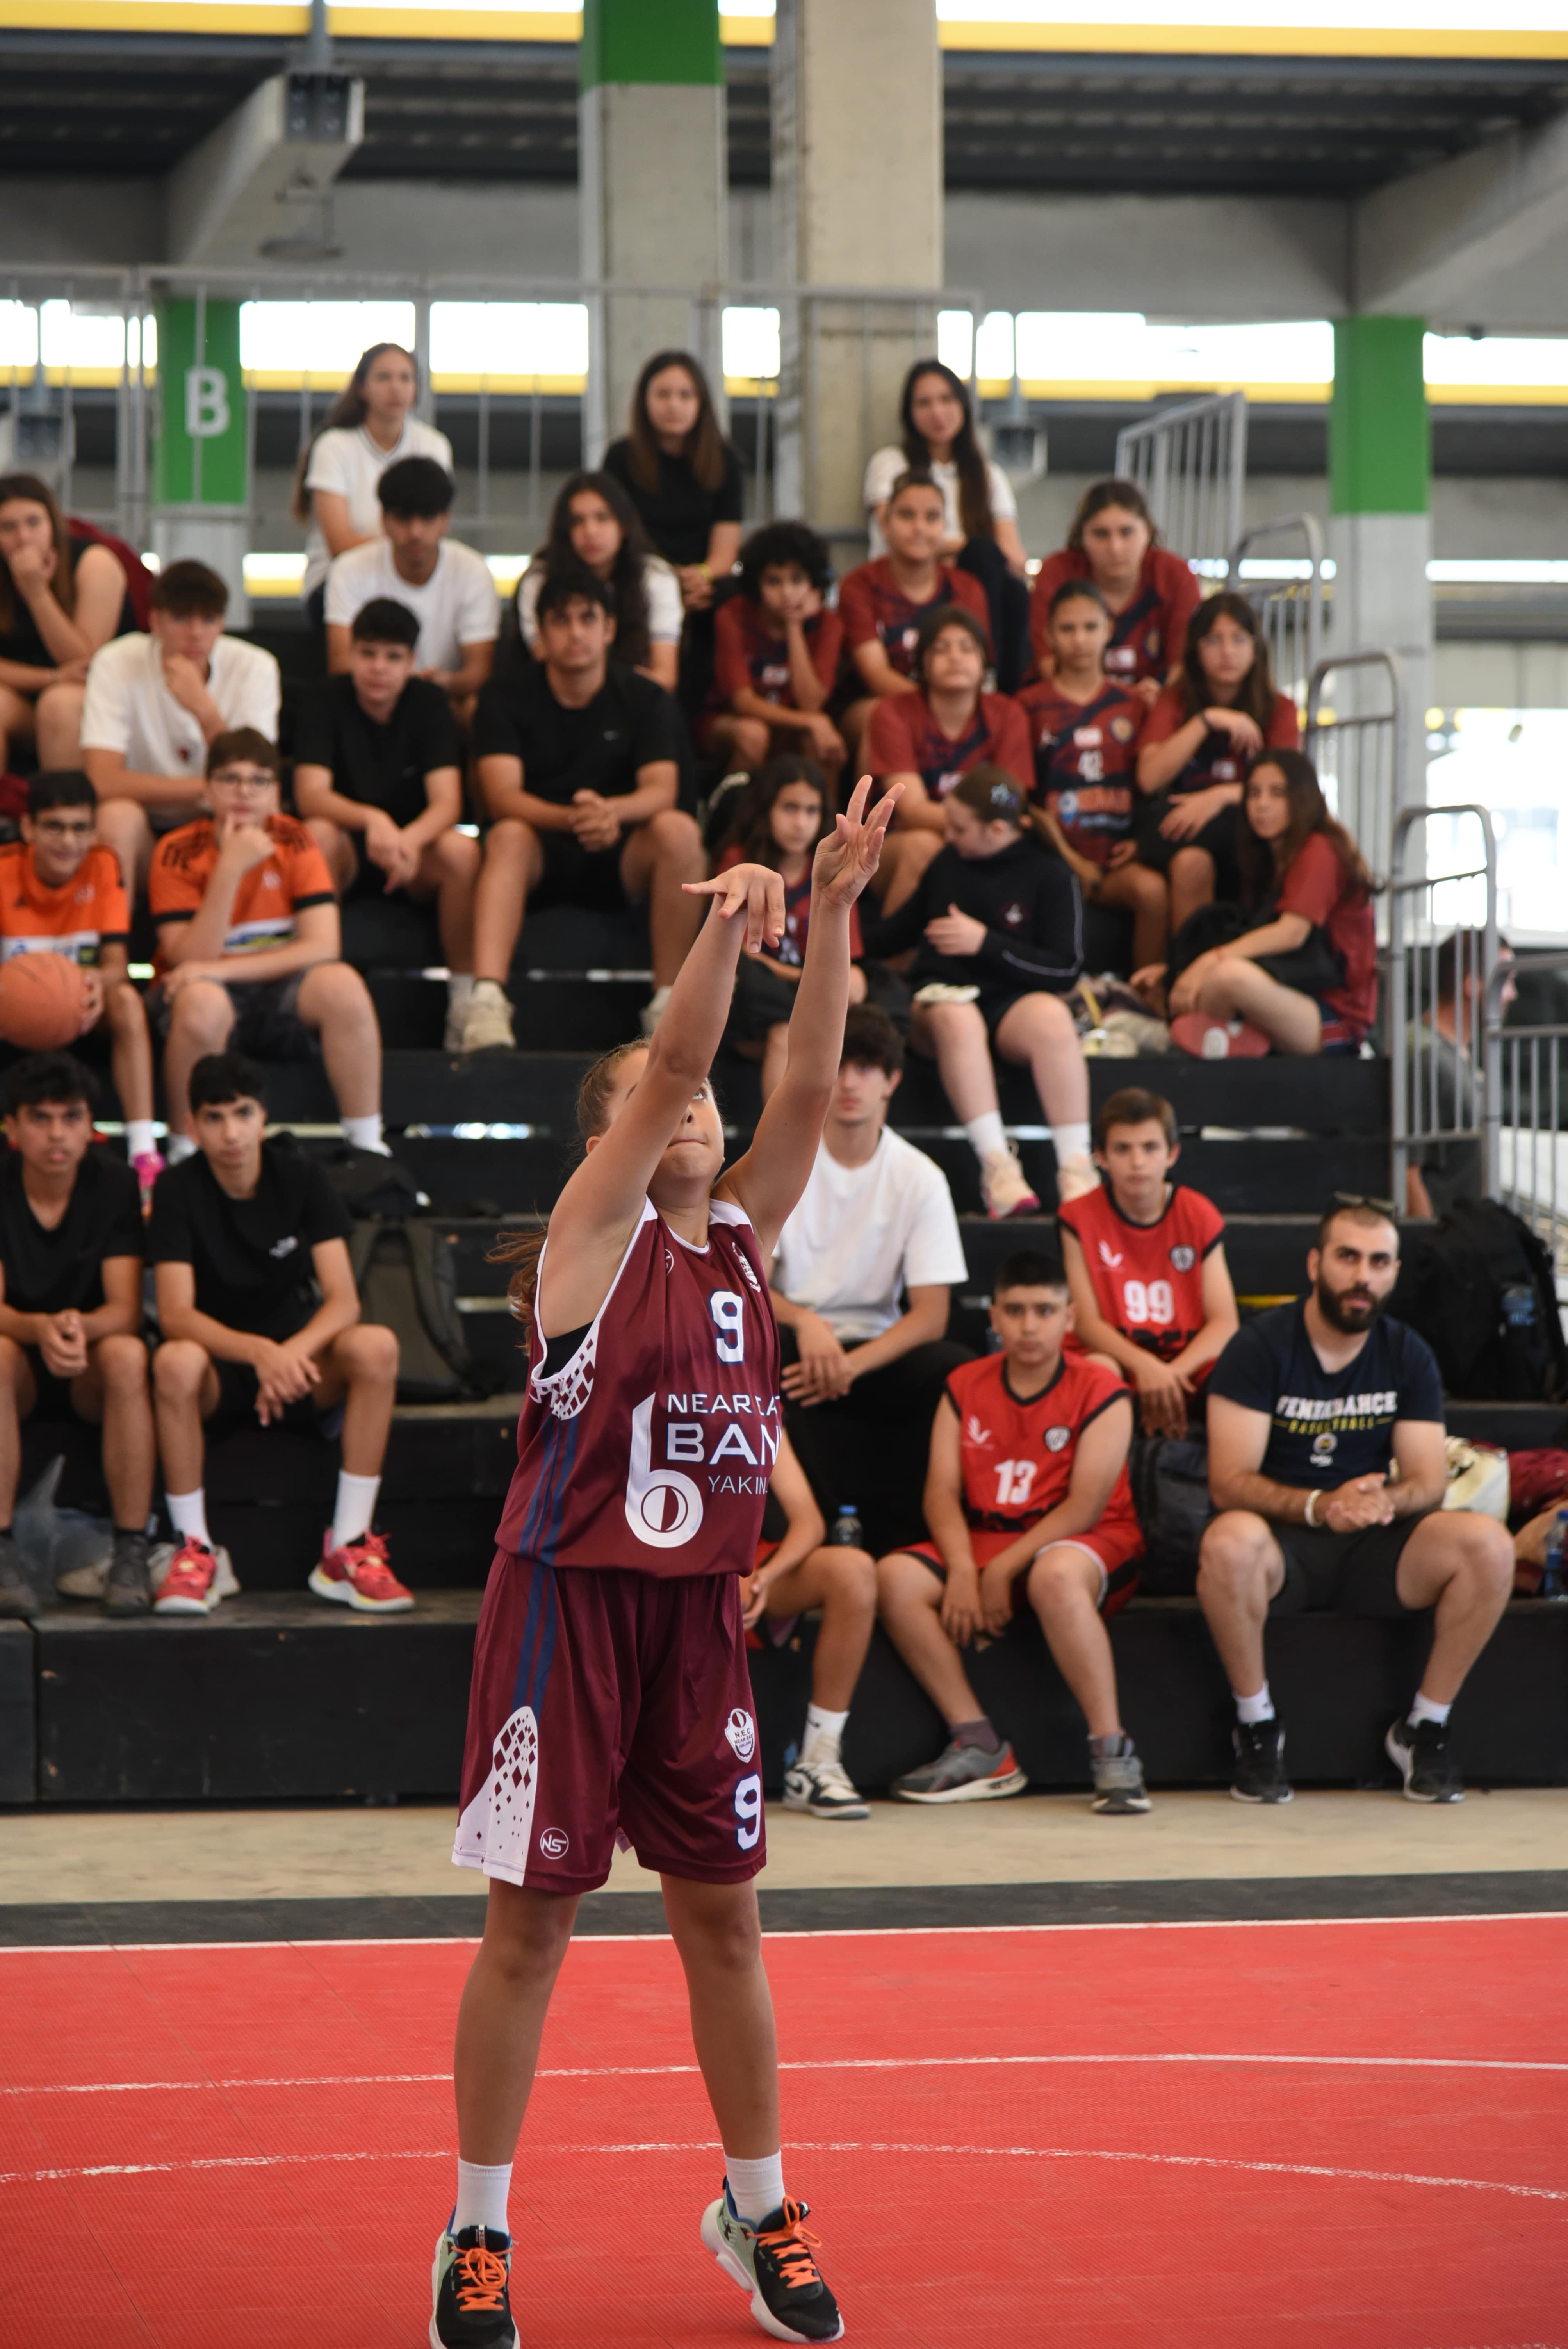 19 Mayıs Tolga Kınacı 3x3 Basketbol Turnuvası Merkez Lefkoşa’da başladı